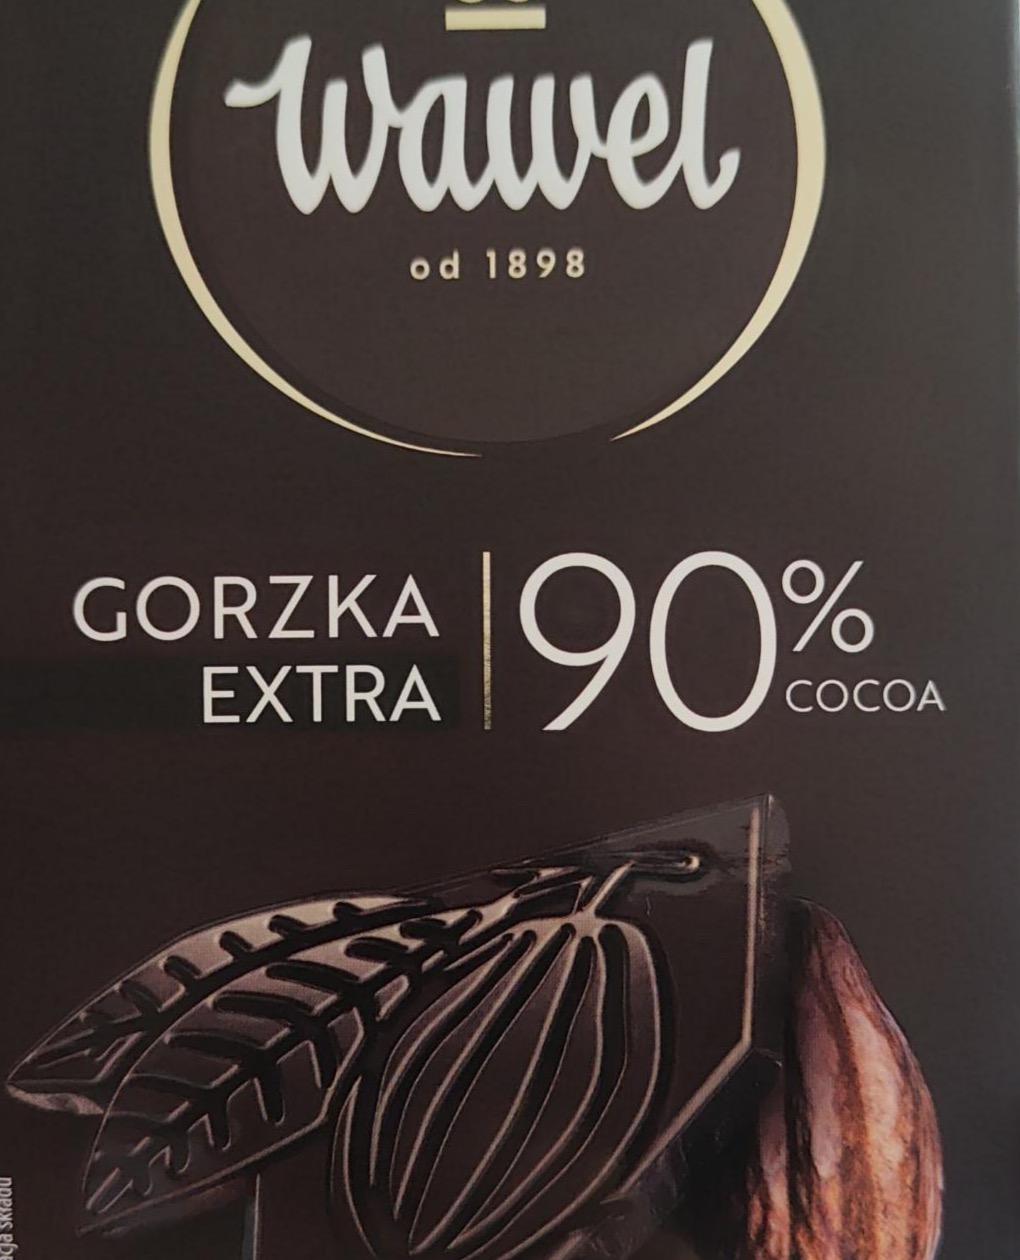 Фото - Czekolada Gorzka Premium 90% Wawel